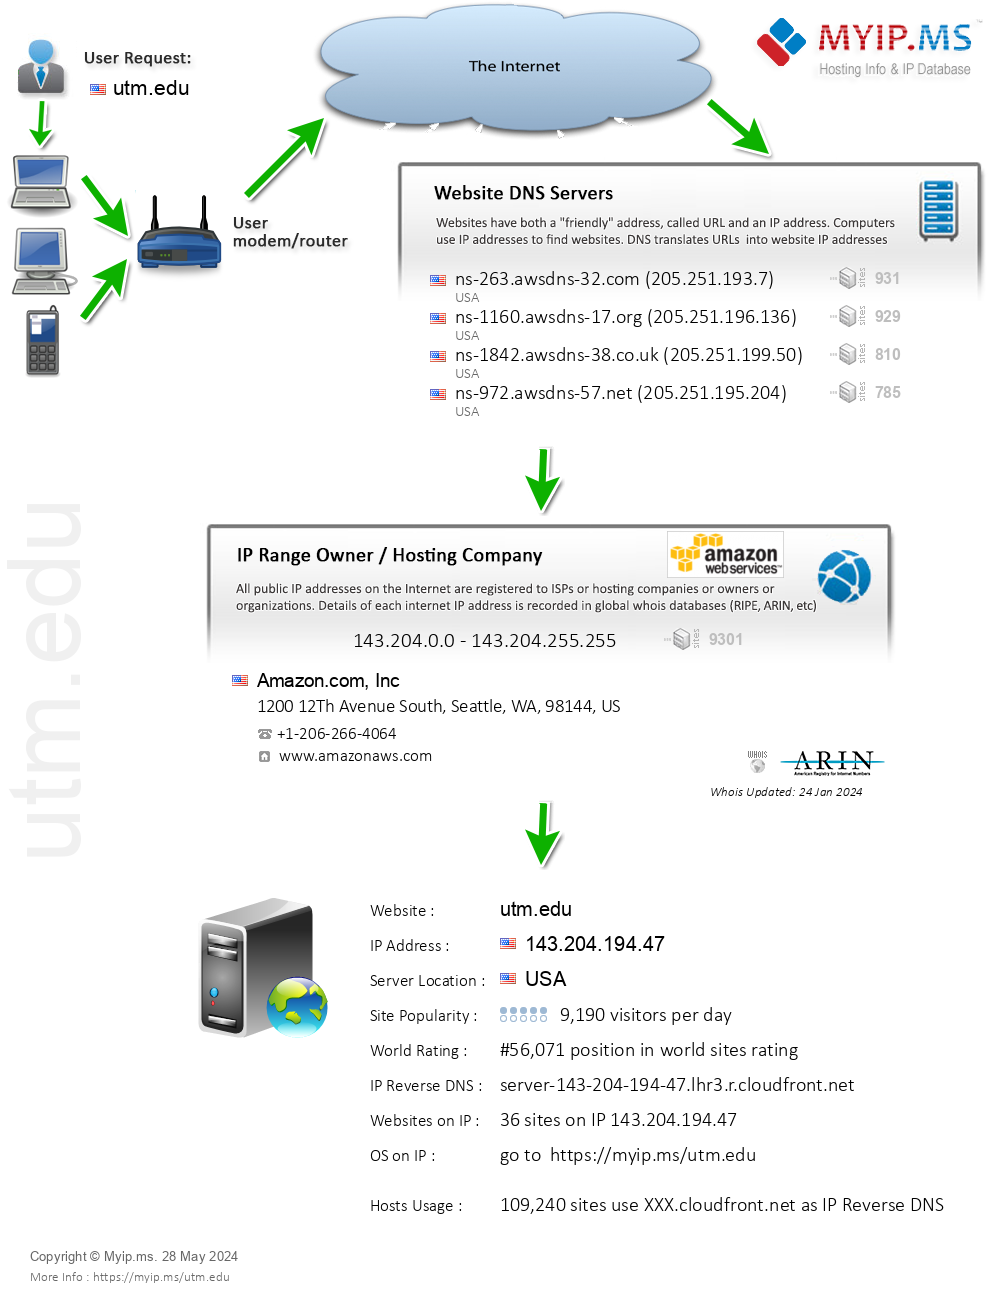 Utm.edu - Website Hosting Visual IP Diagram